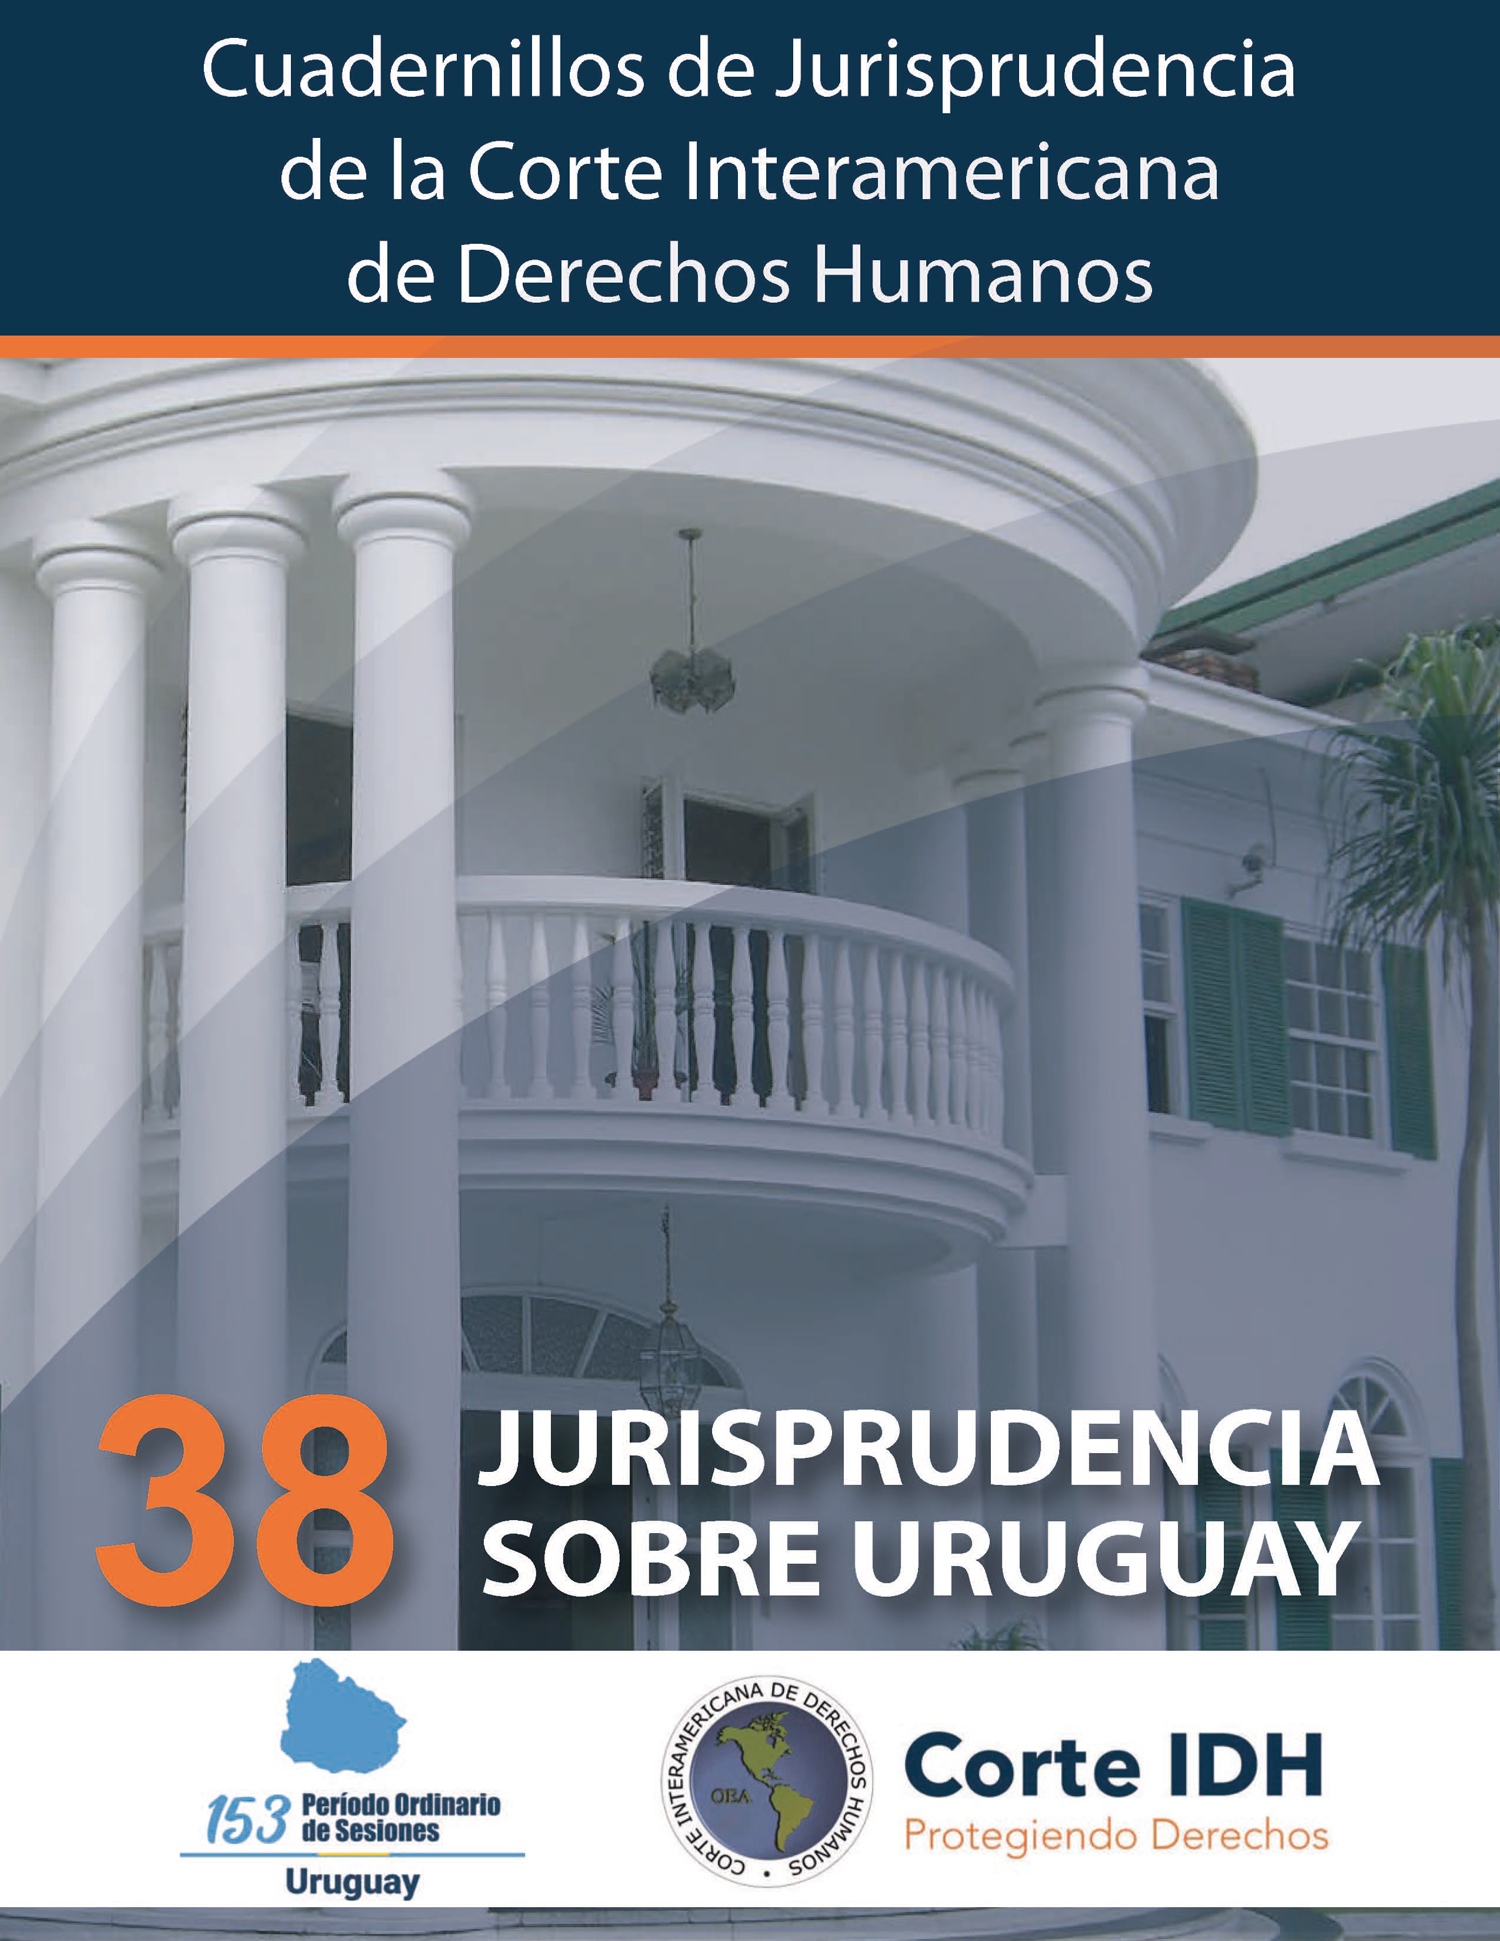 Cuadernillo de Jurisprudencia N° 38: Jurisprudencia sobre Uruguay